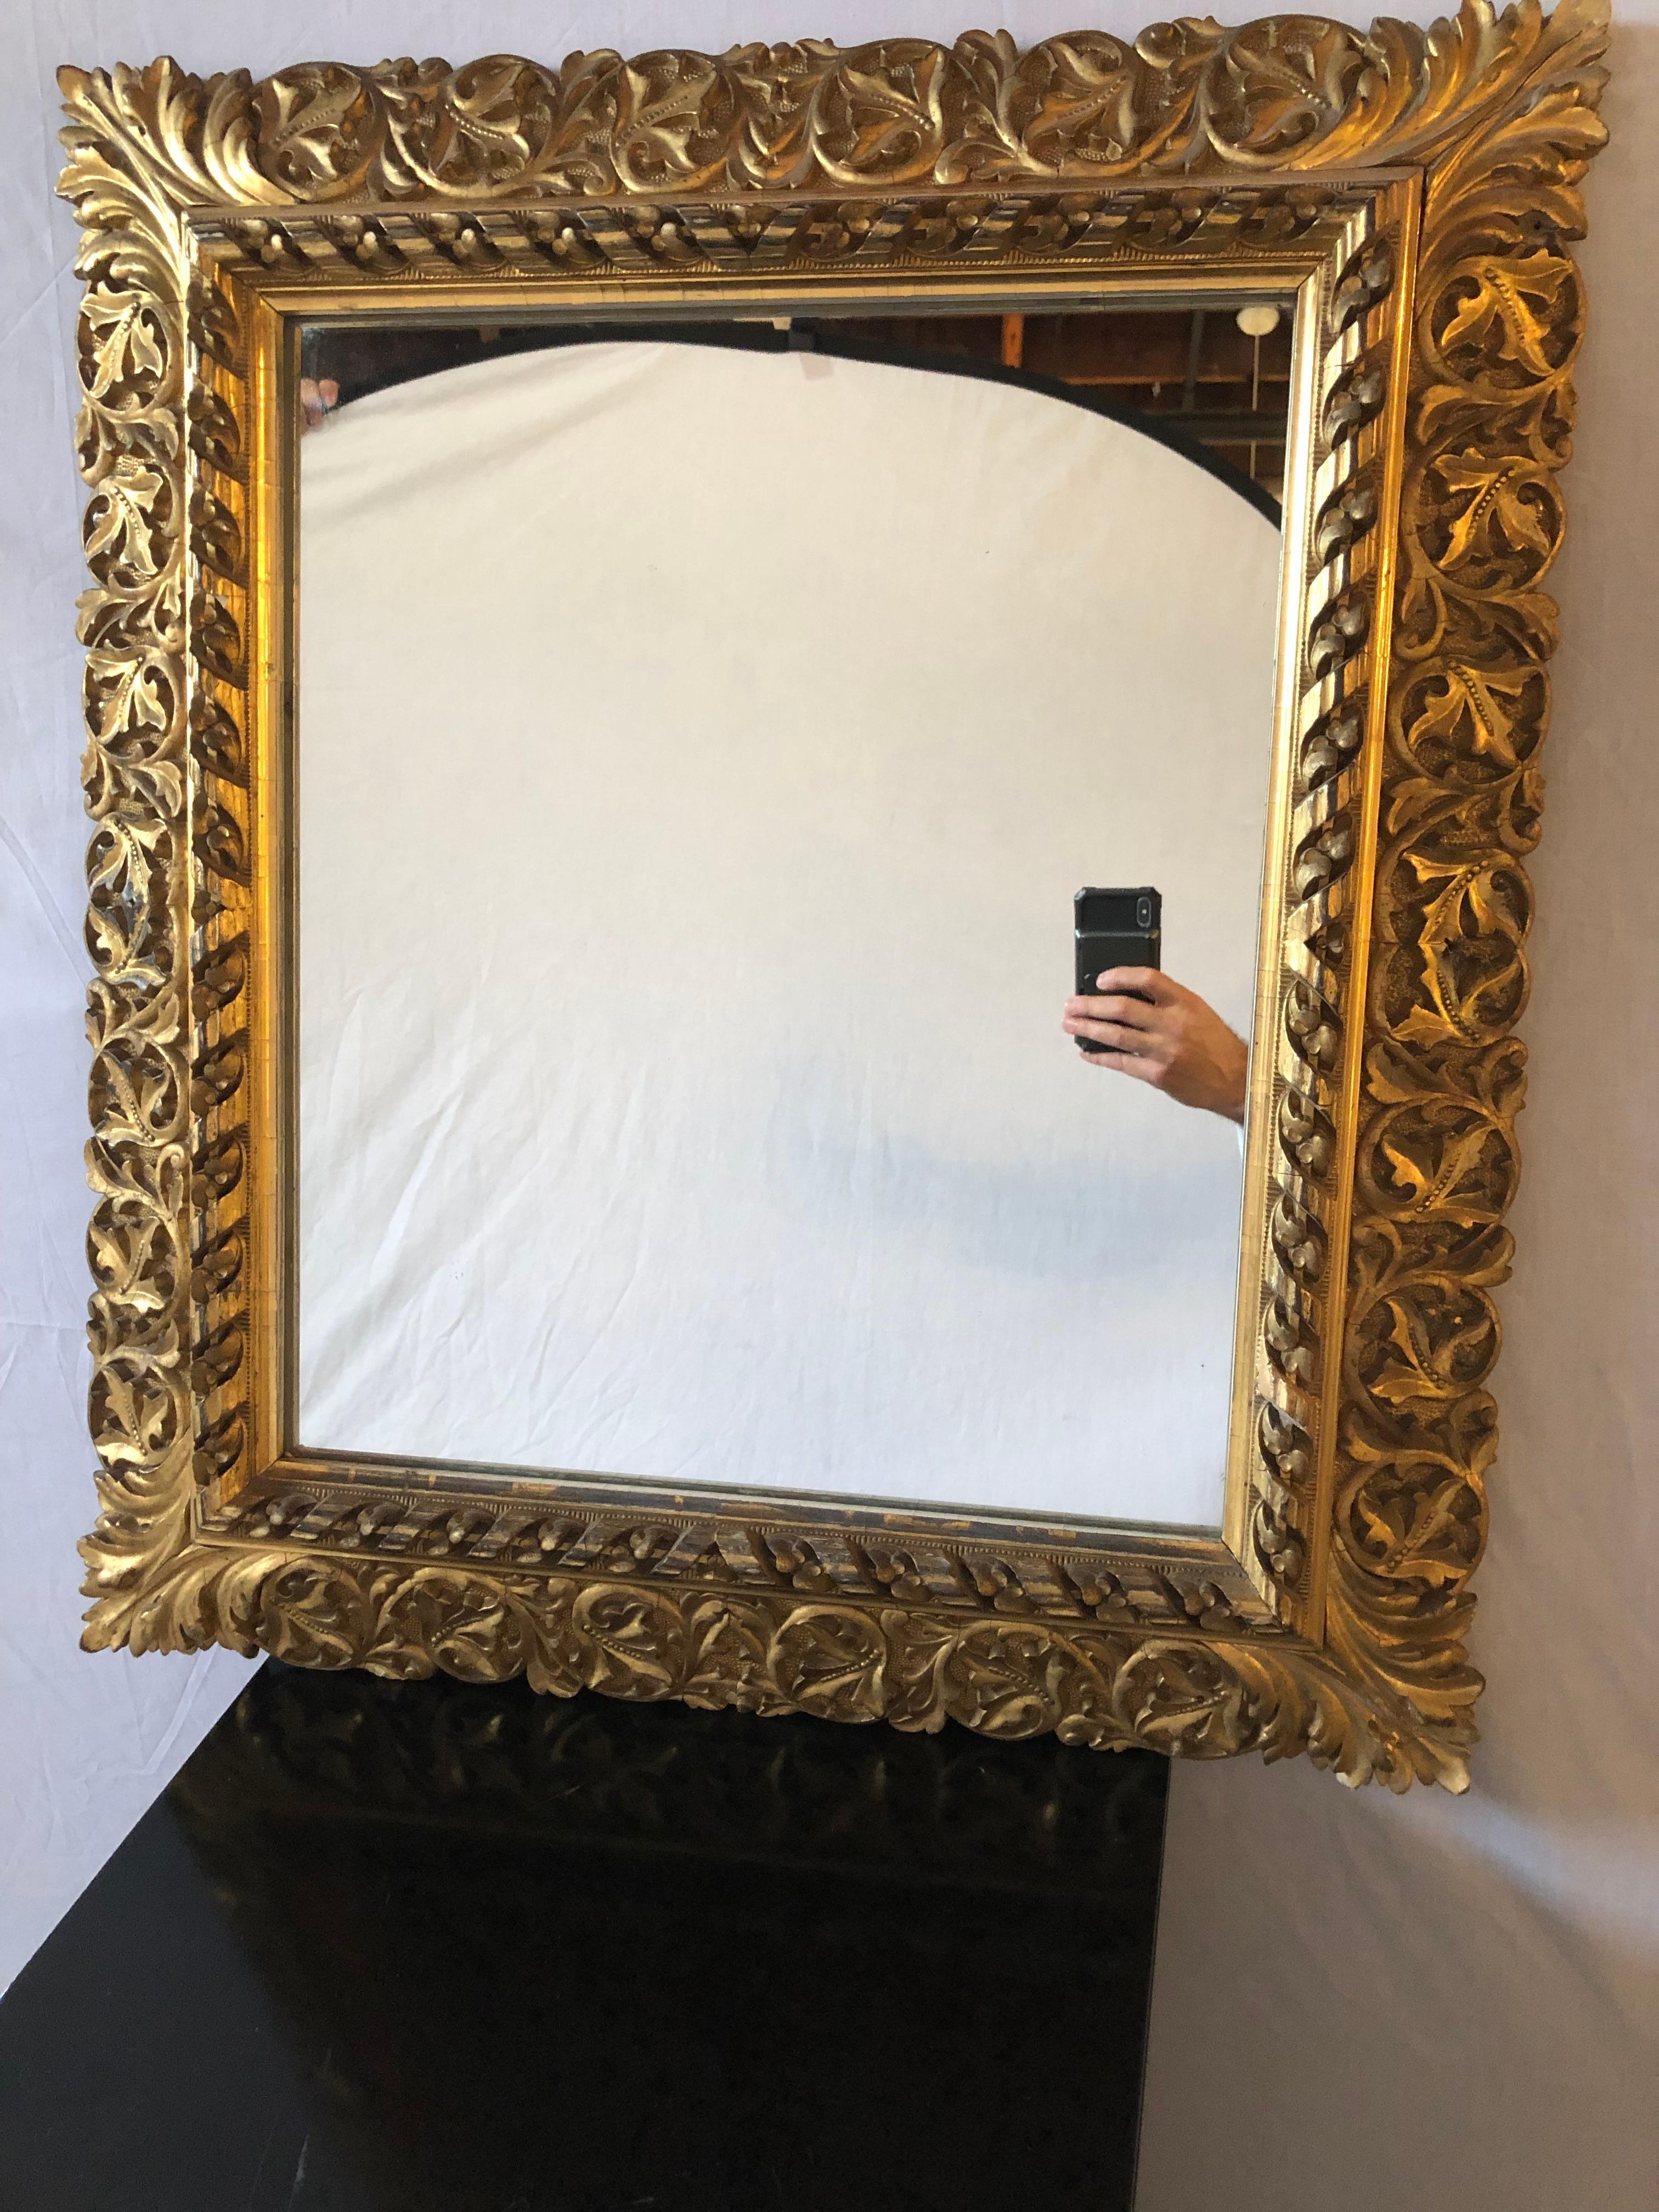 Antiker Wand-/Konsol- oder Pfeilerspiegel aus feinem Vergoldungsholz des 19. Jahrhunderts mit Blattranken- und Blumenschnitzereien. Dieser fein vergoldete Spiegel ist quadratisch und einfach atemberaubend in Qualität und Design.